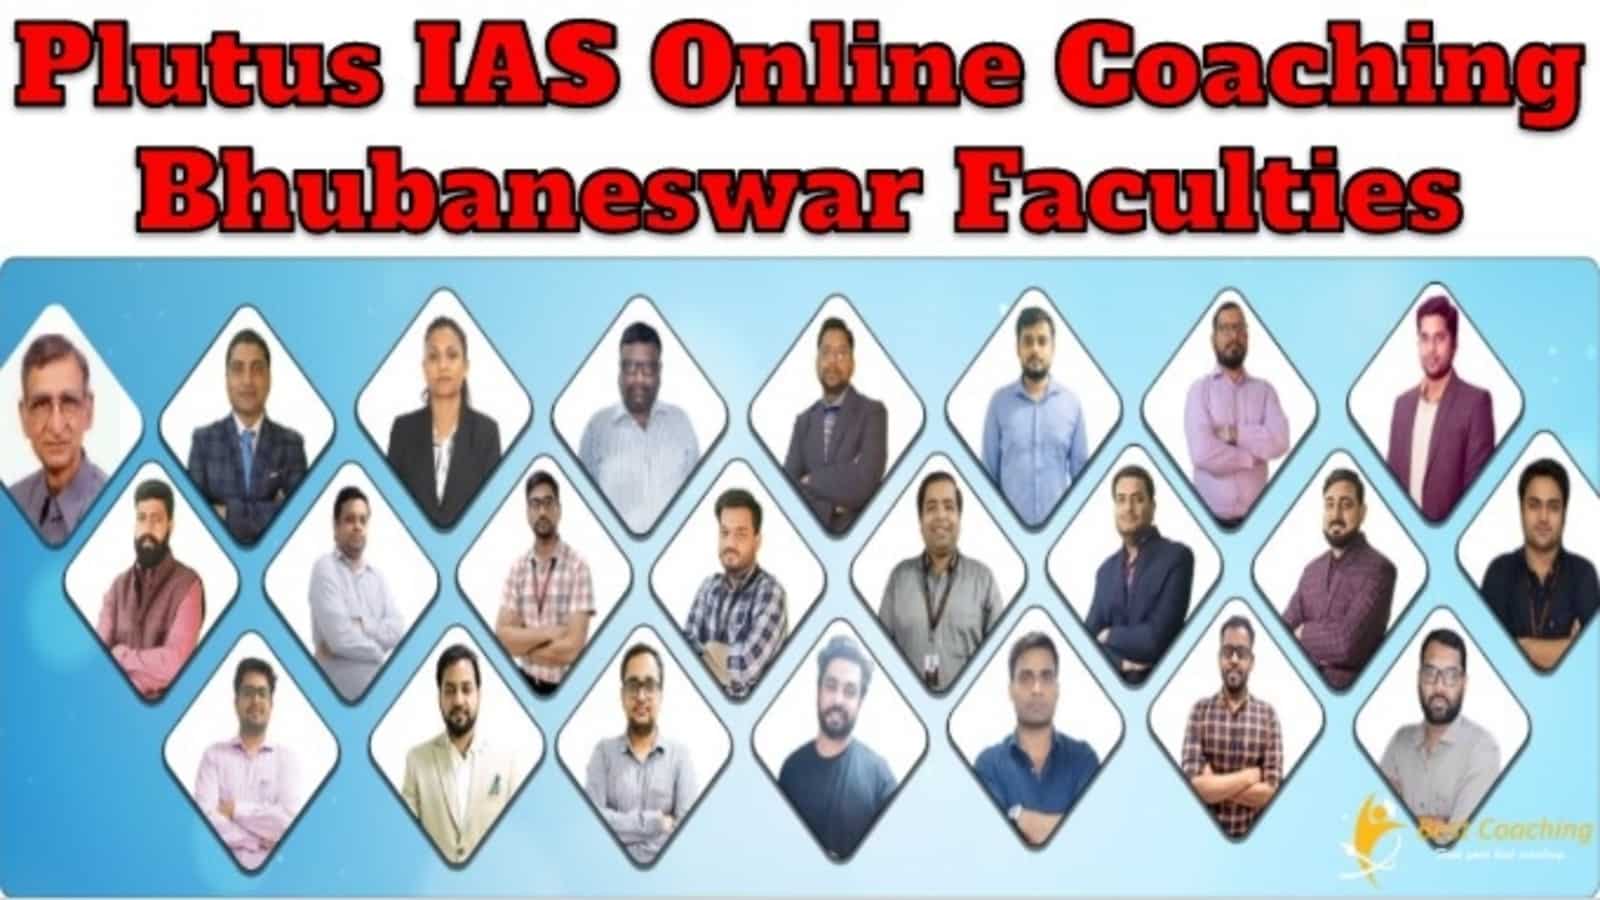 Plutus IAS Online Coaching Bhubaneswar Faculties